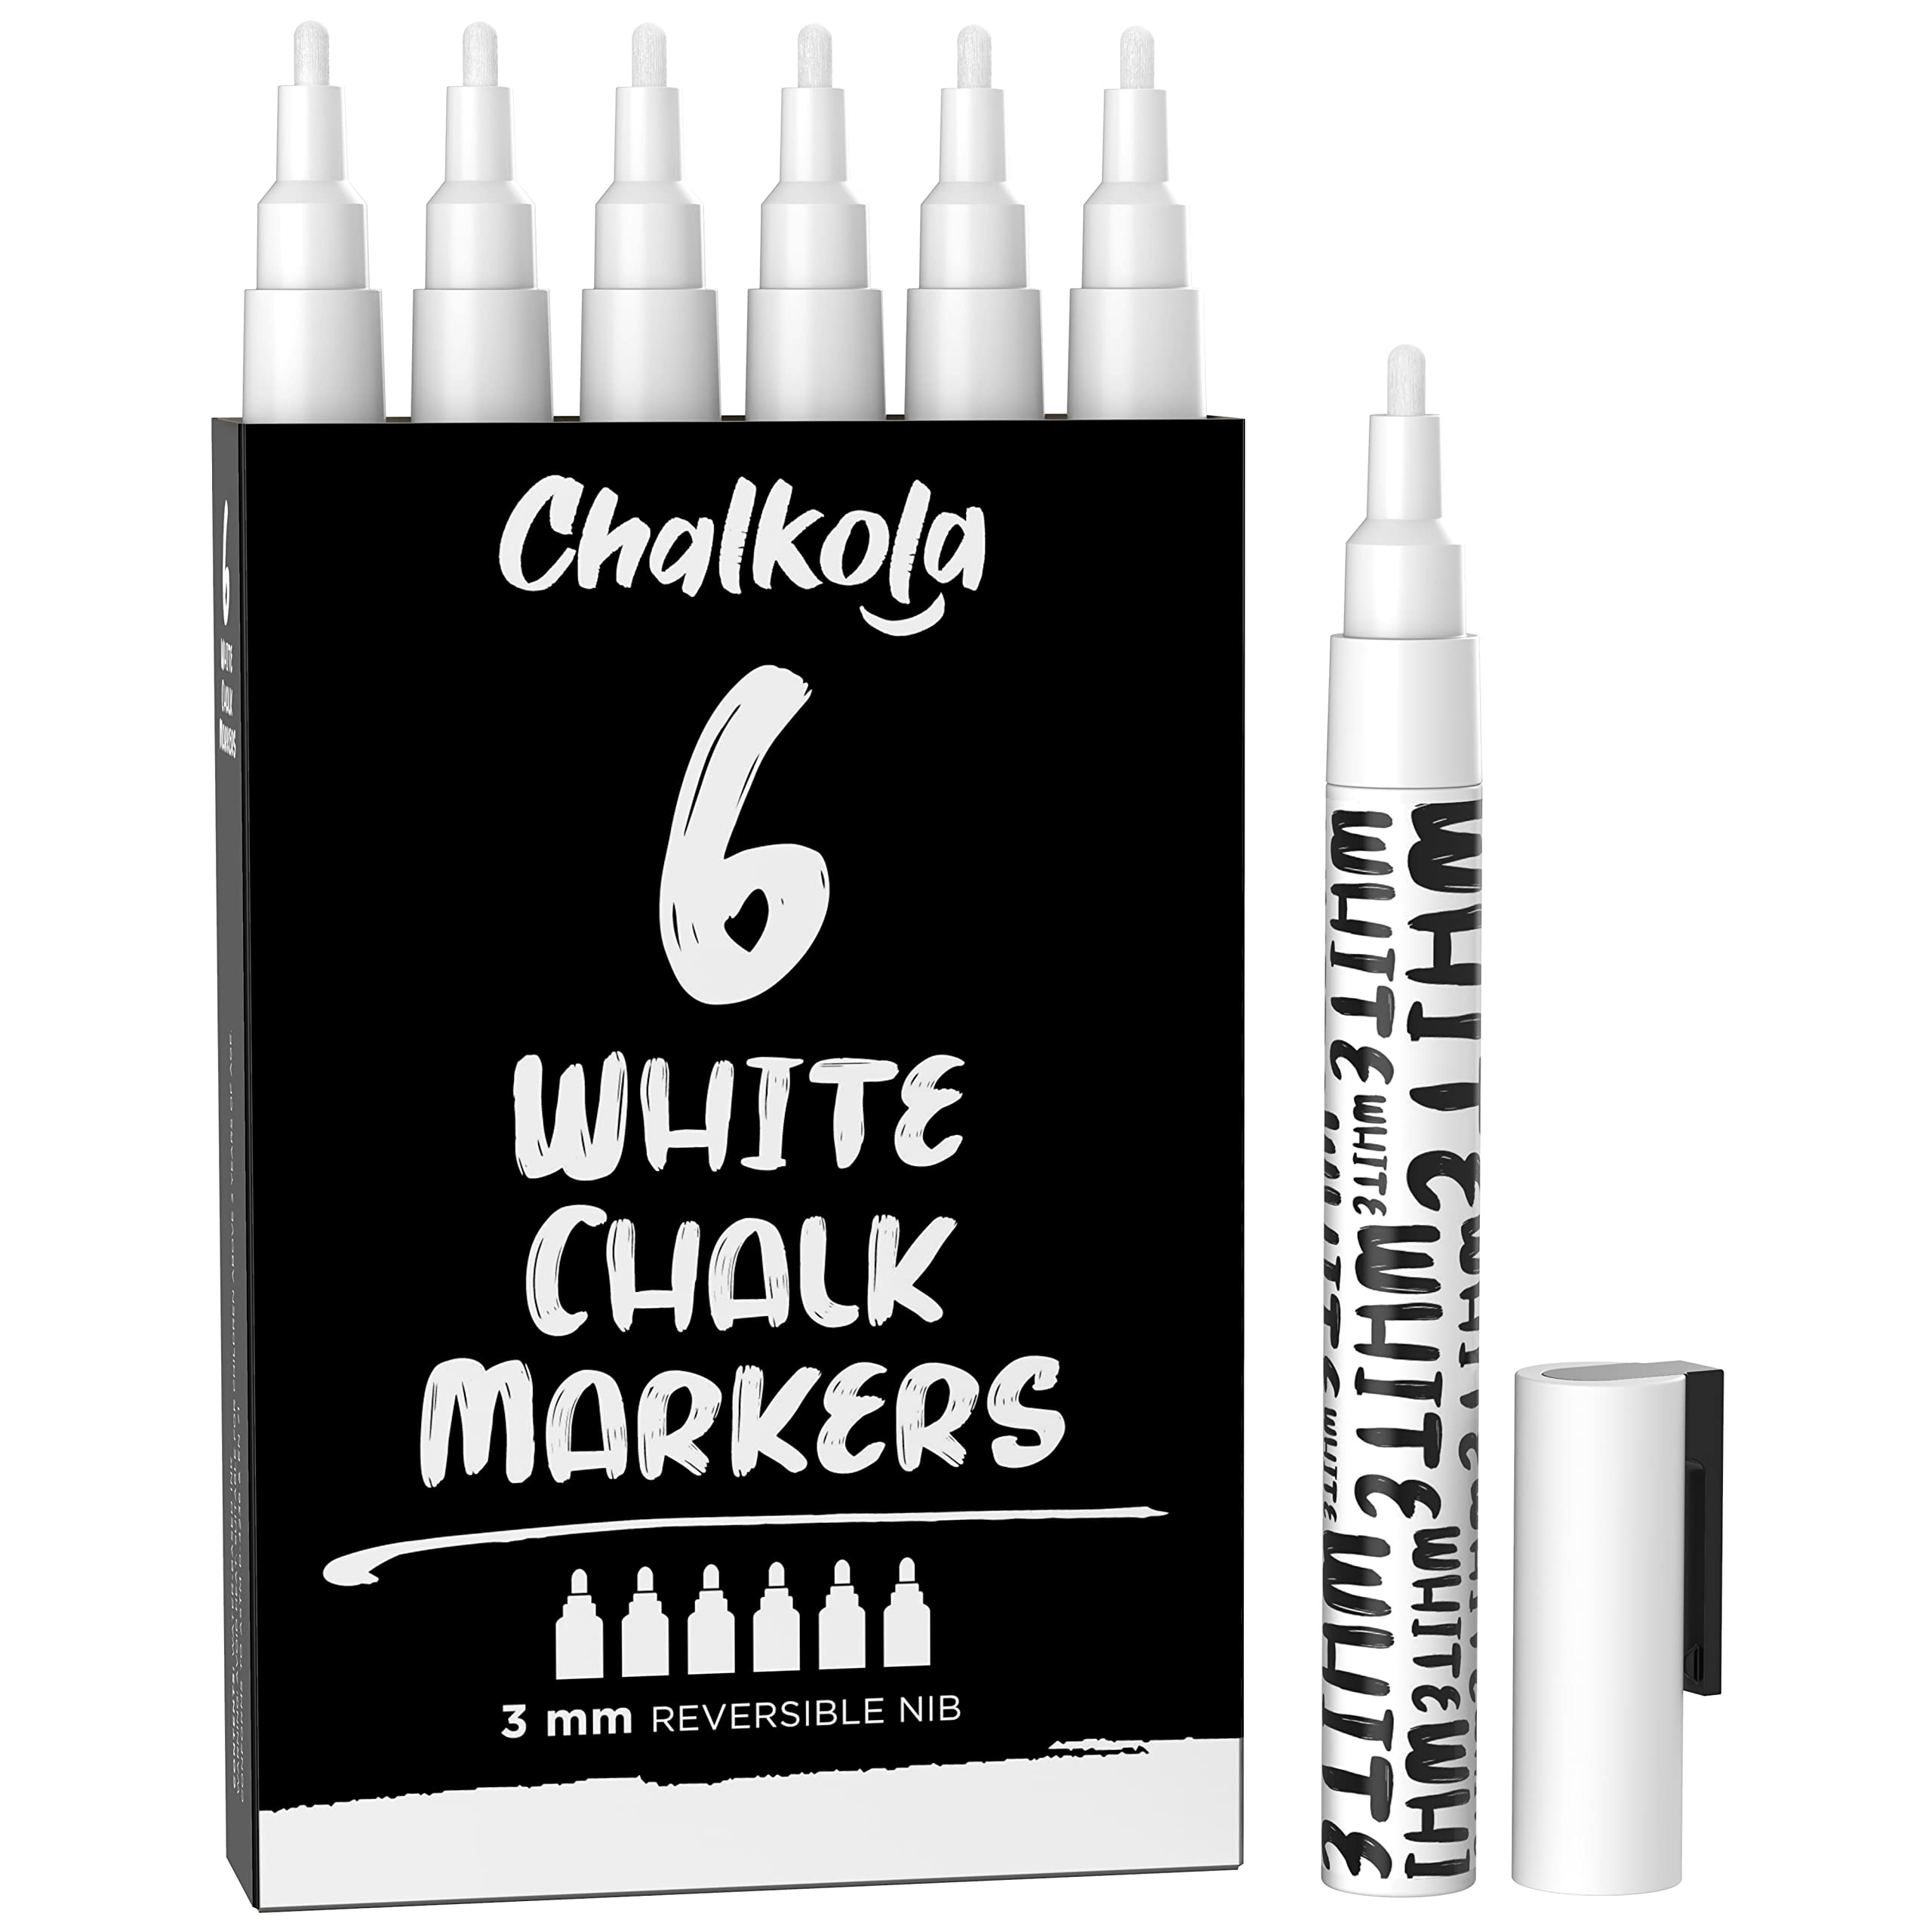 Chalkola White Chalk Markers - White Dry Erase Liquid Chalk Pens